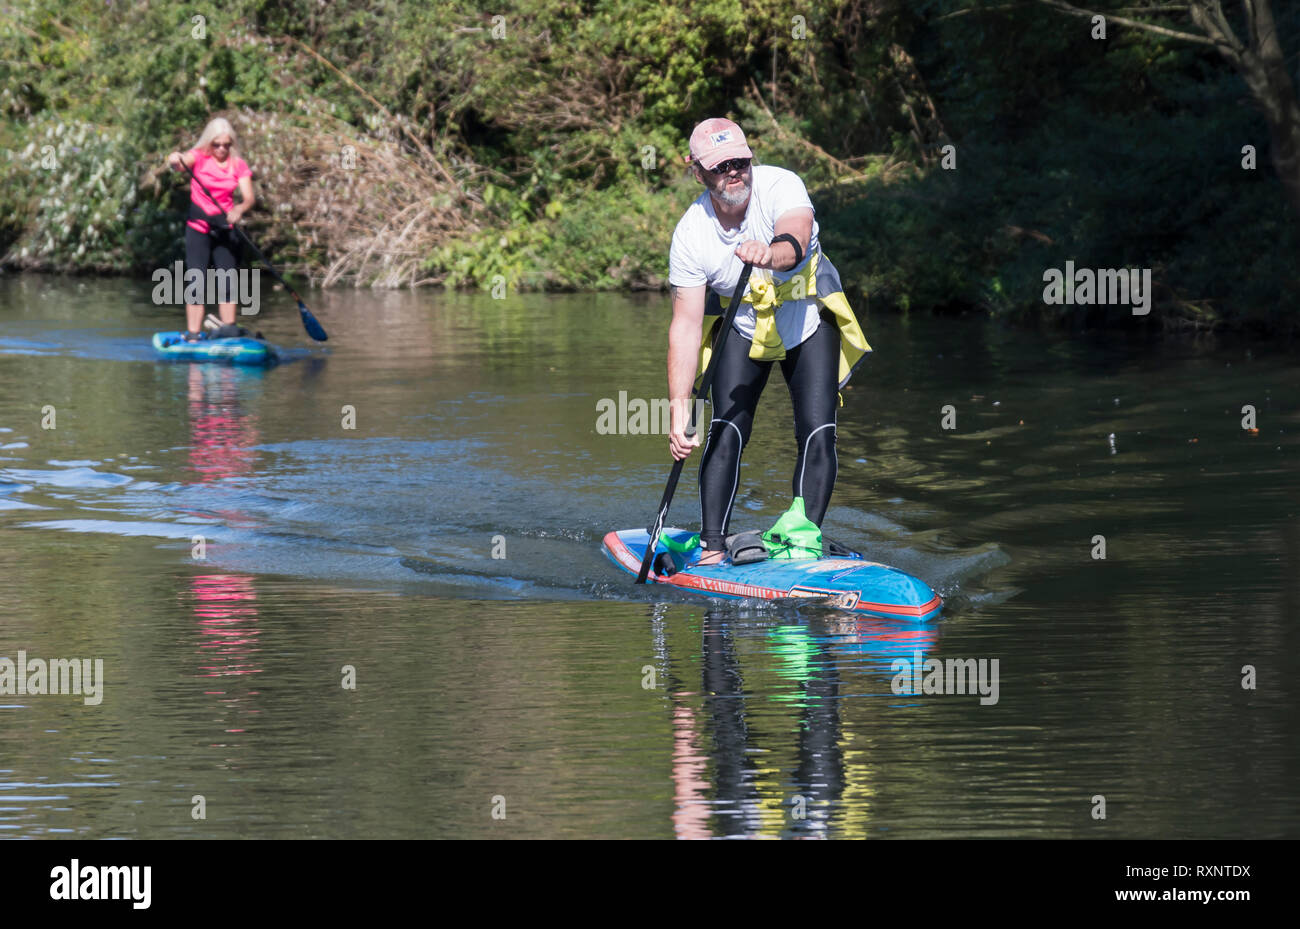 Homme et femme sur paddle boards sur Canal Chichester, West Sussex, UK. Couple de personnes paddle en été. Paddleboard. Paddleboards. Banque D'Images